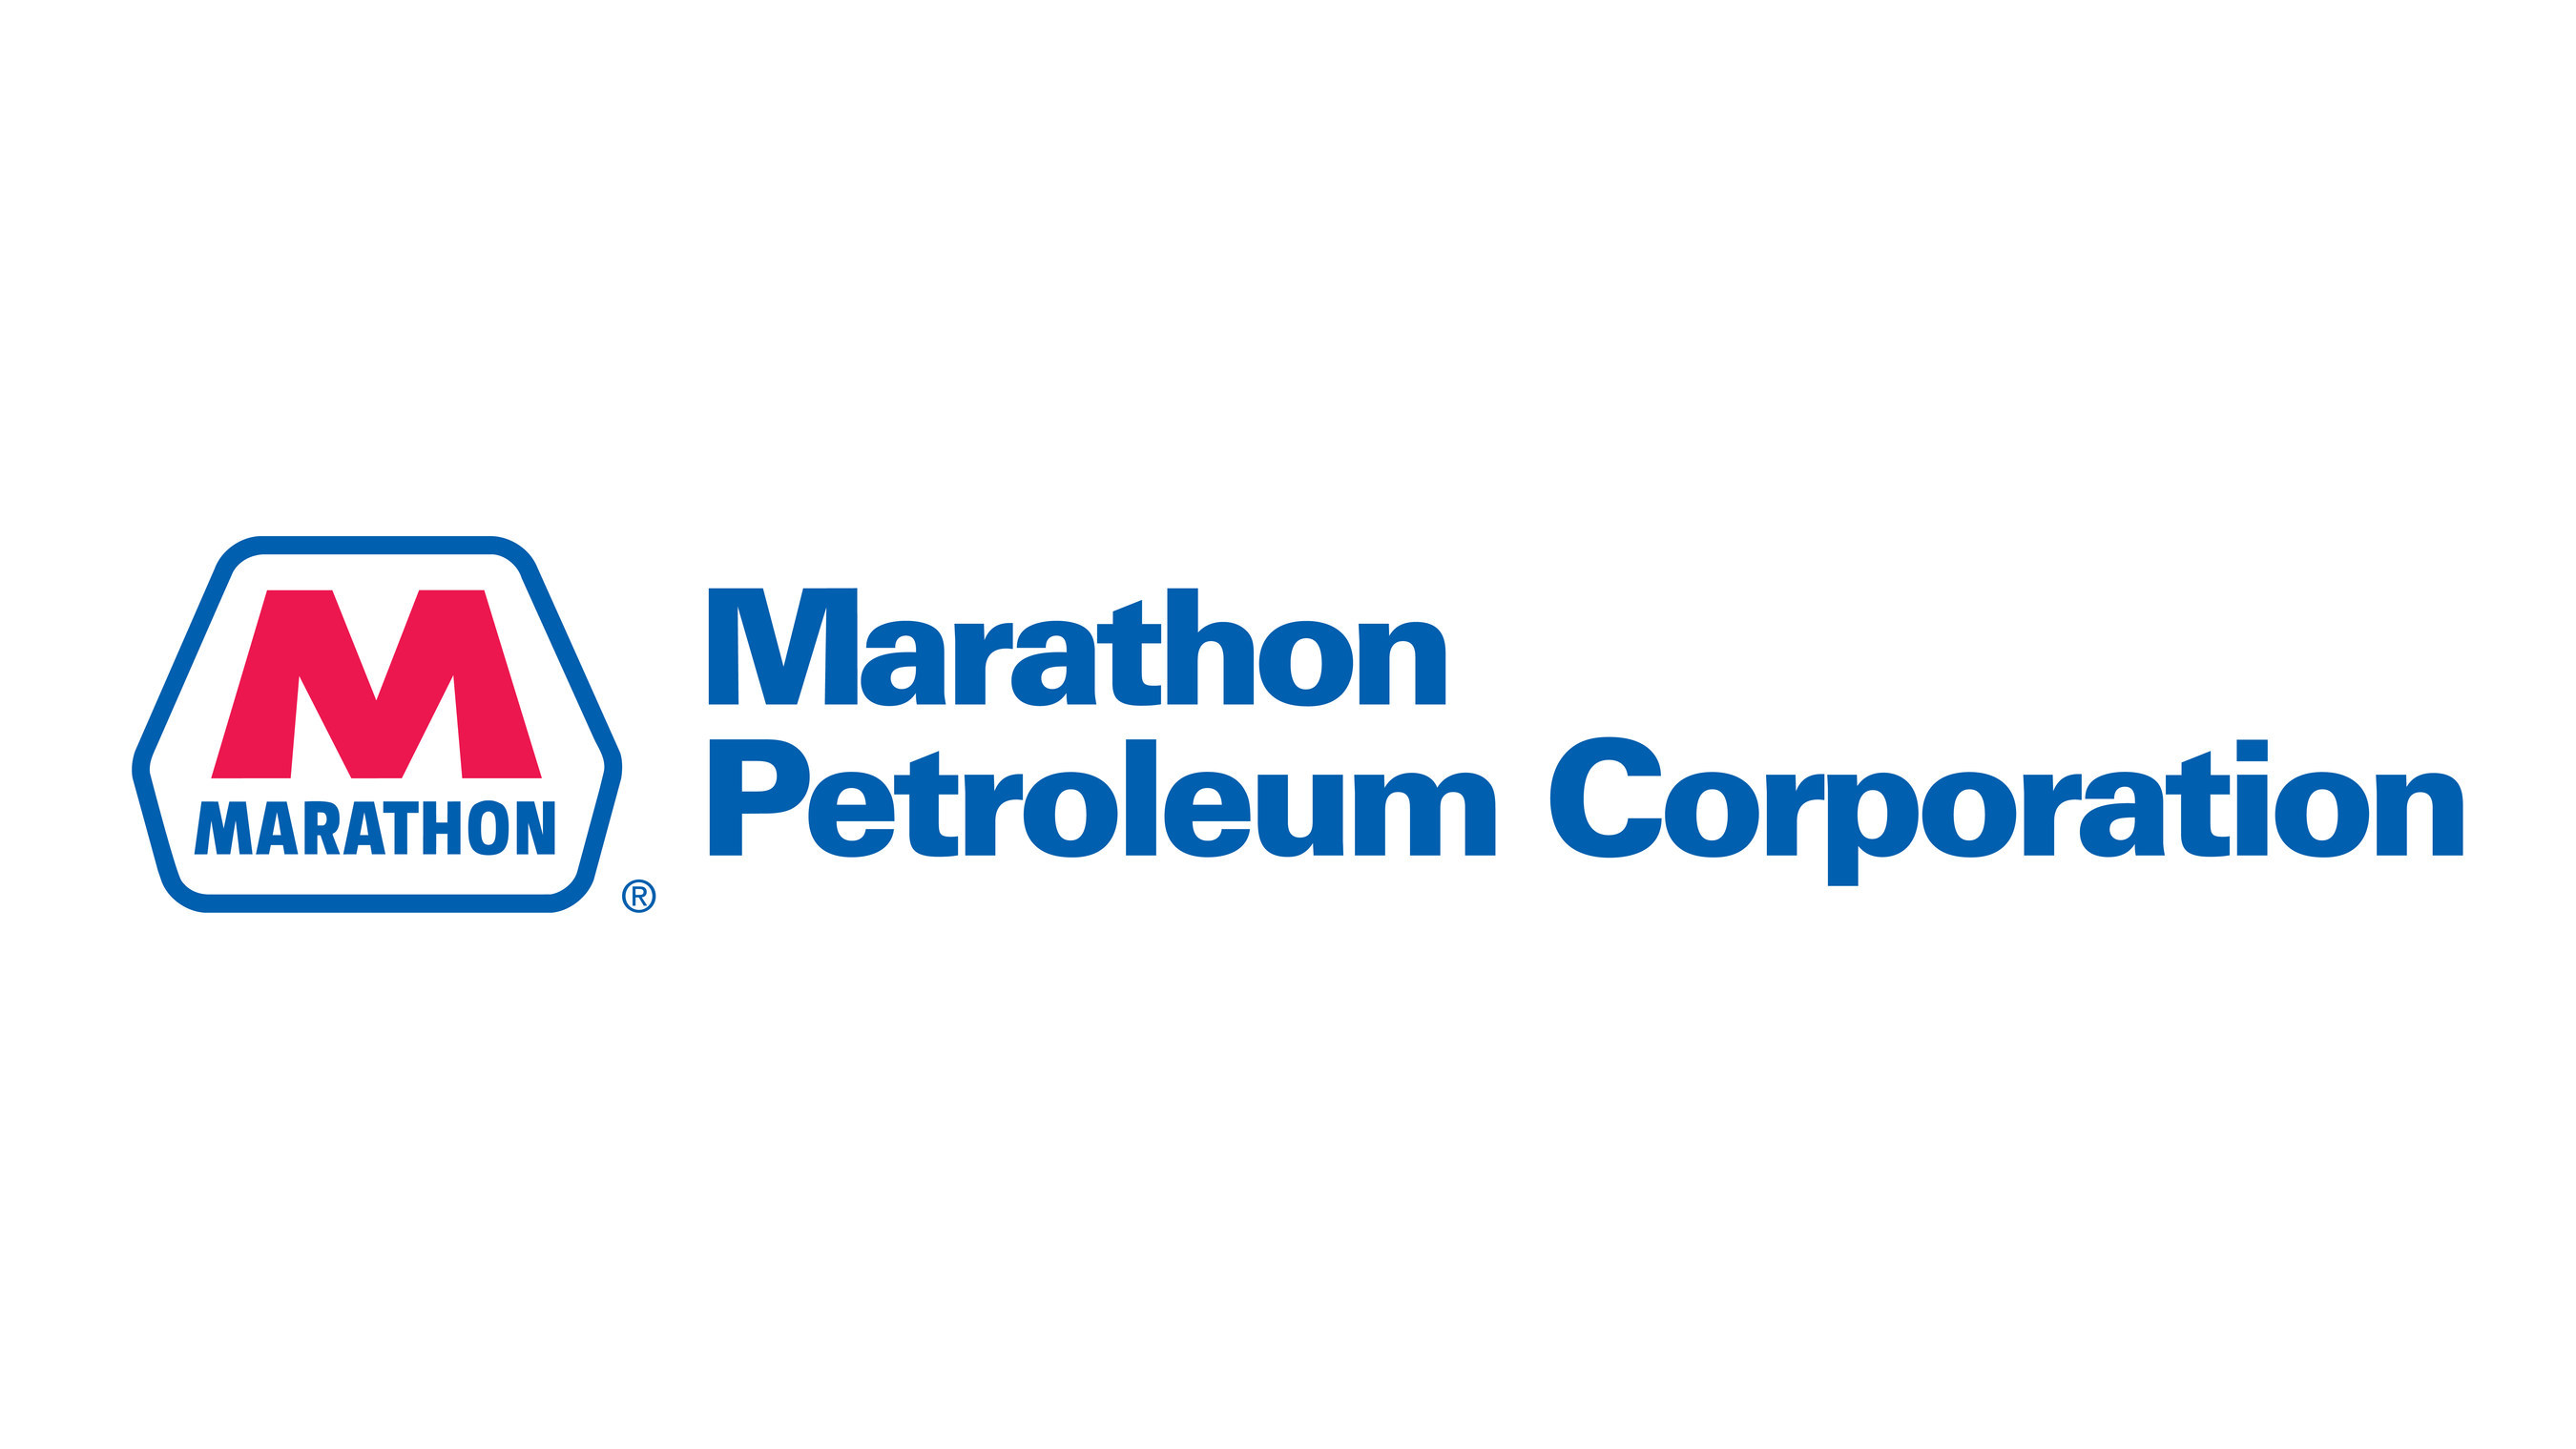 Marathon (M1PC34) planeja fechar refinarias de petróleo nos Estados Unidos